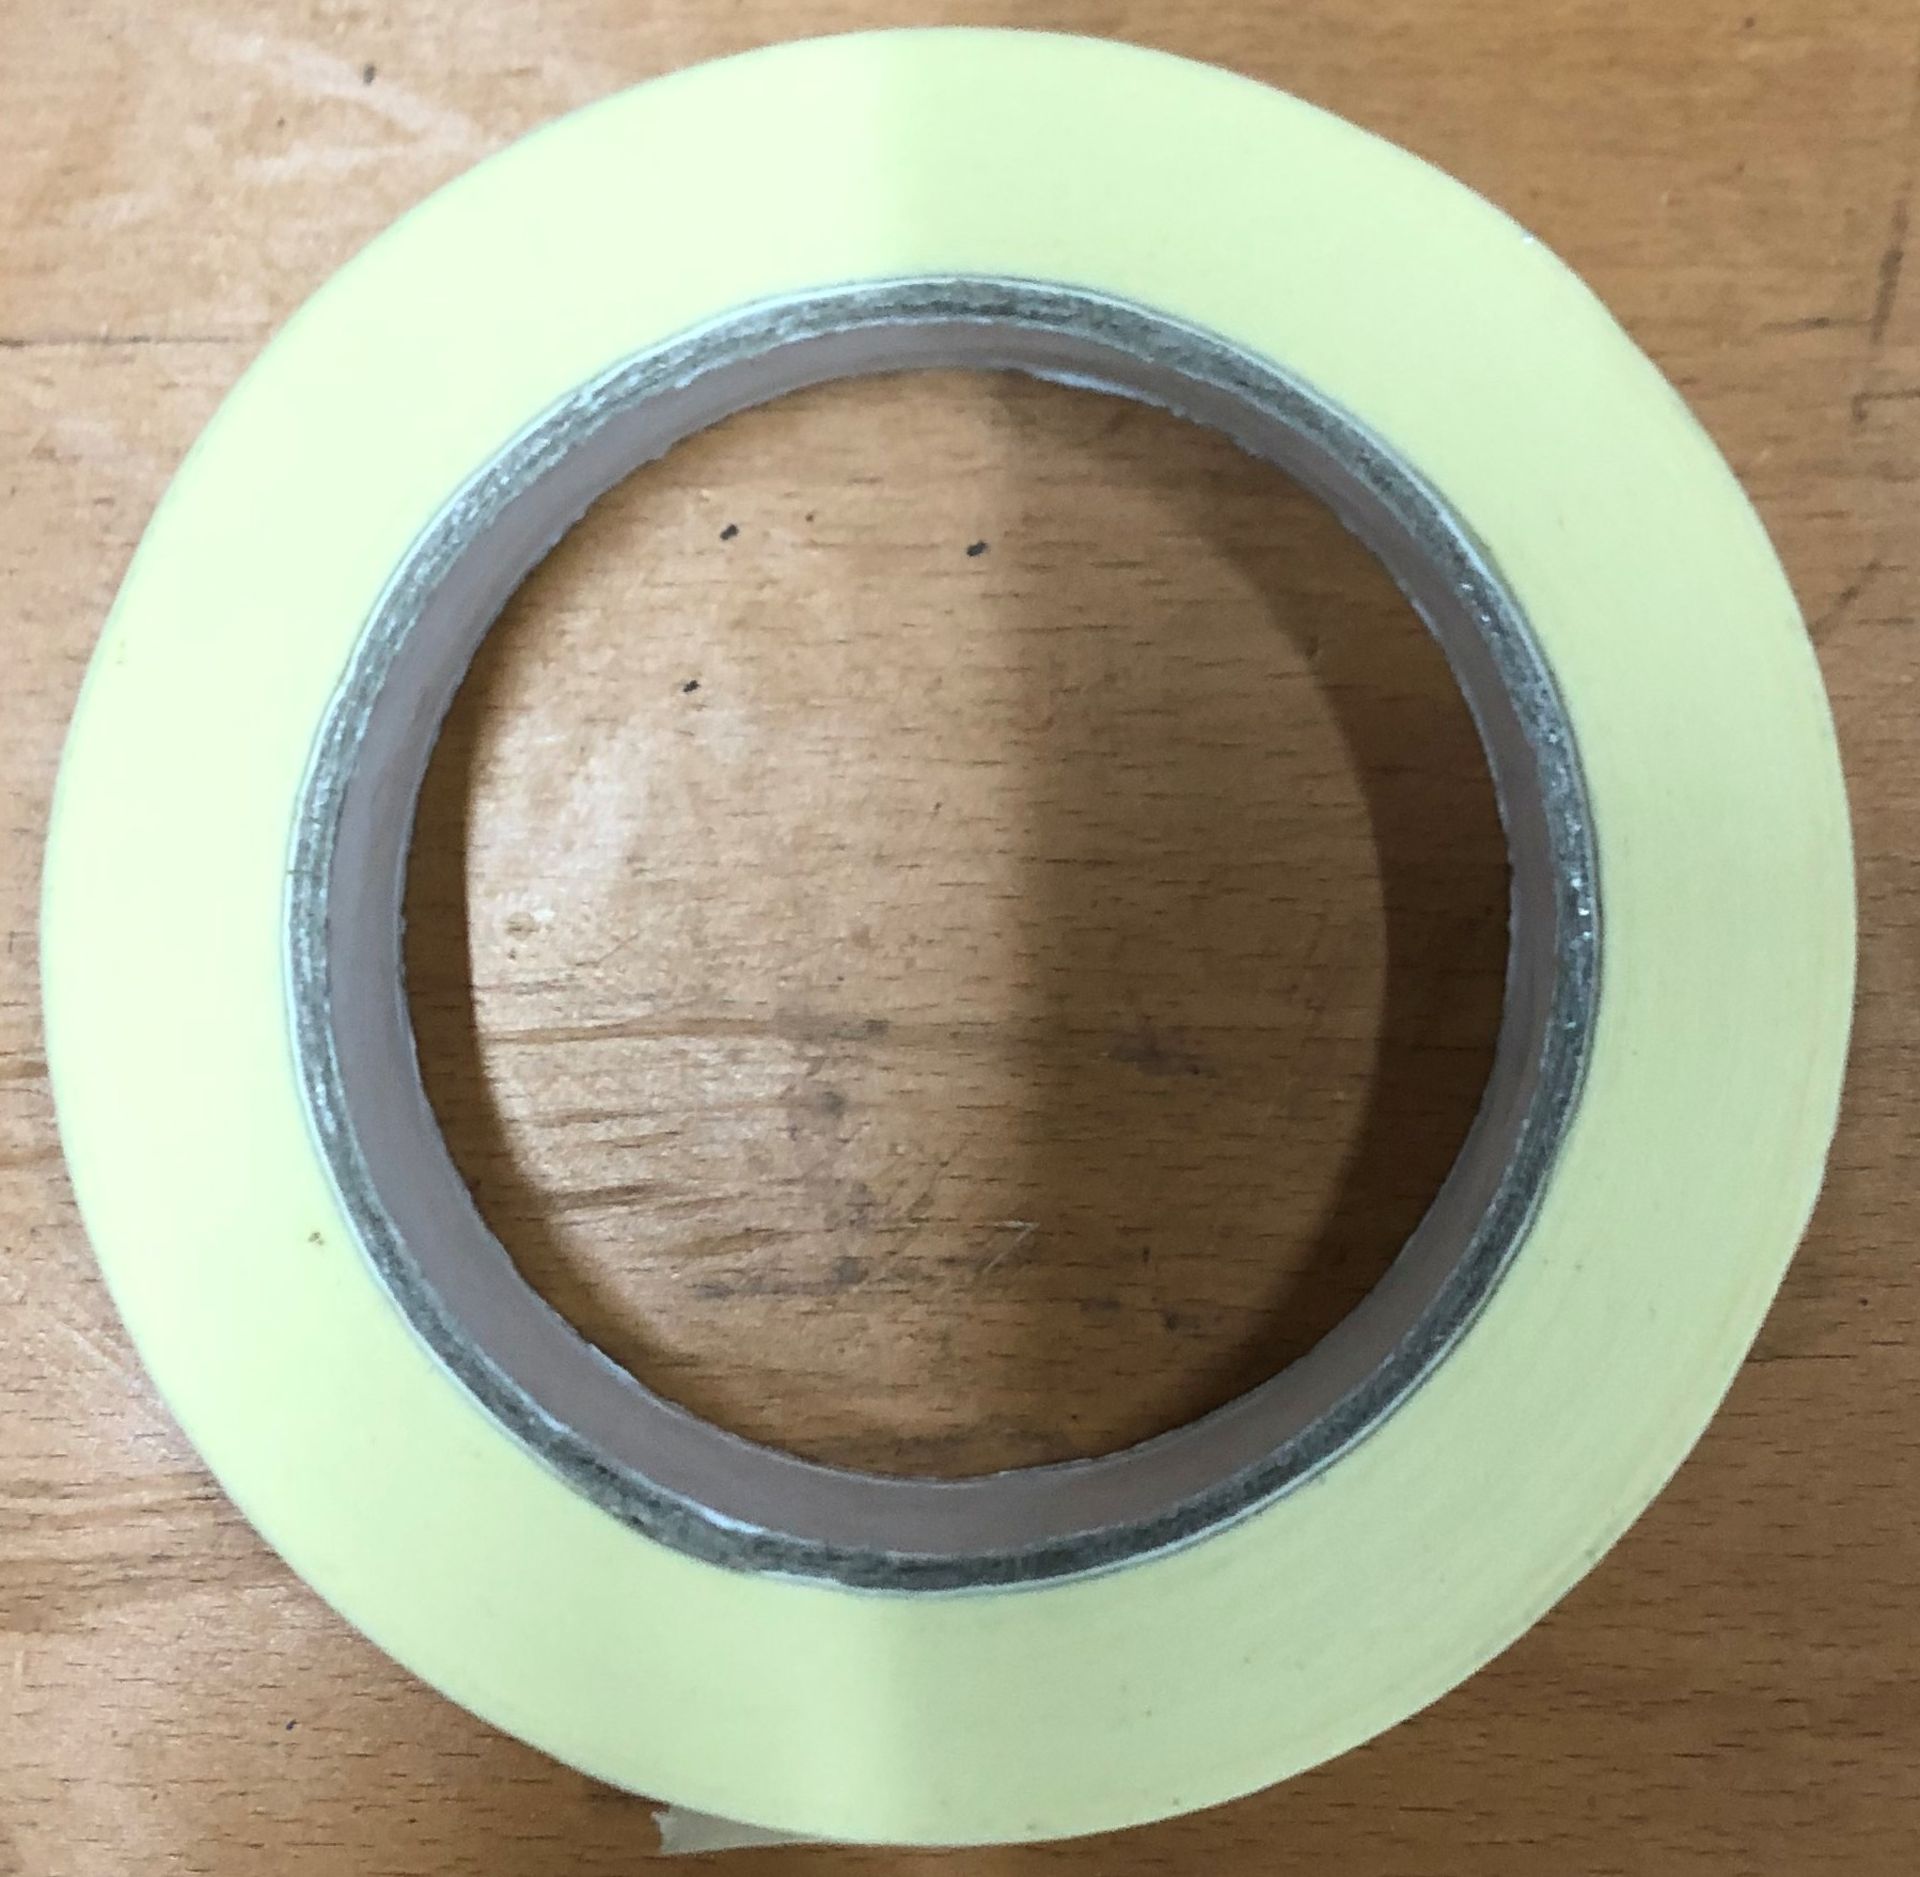 72 x 24mm x 50m Masking tape bundle | RRP £85.68 - Image 2 of 2